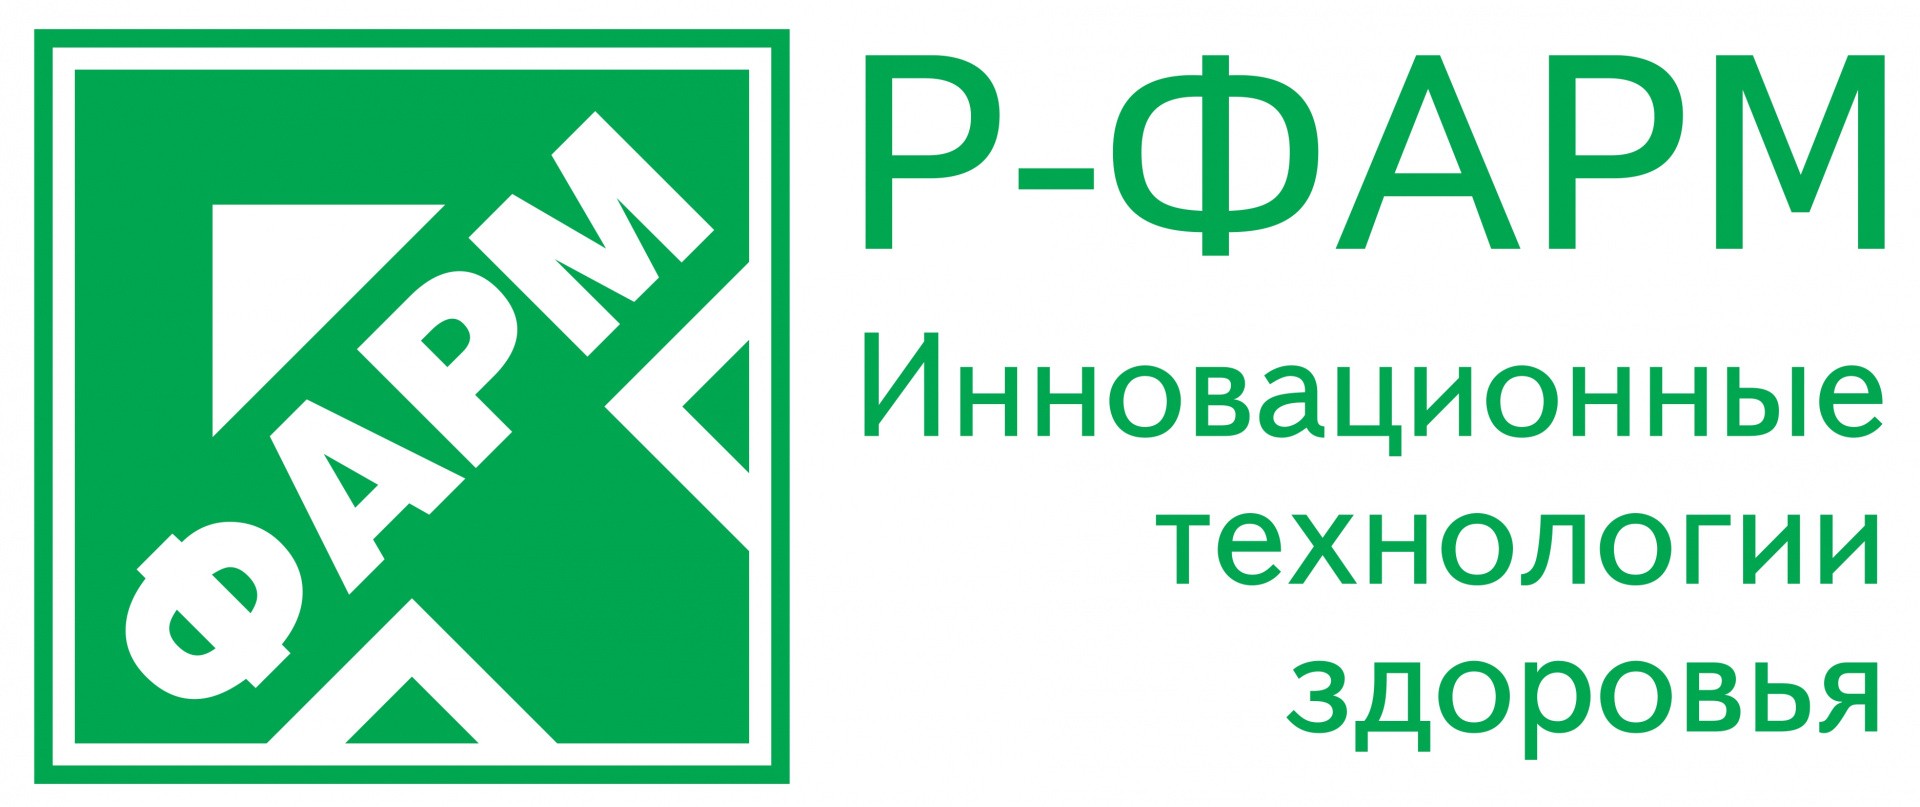 6 r-pharm_logo_rus_page-0001.jpg